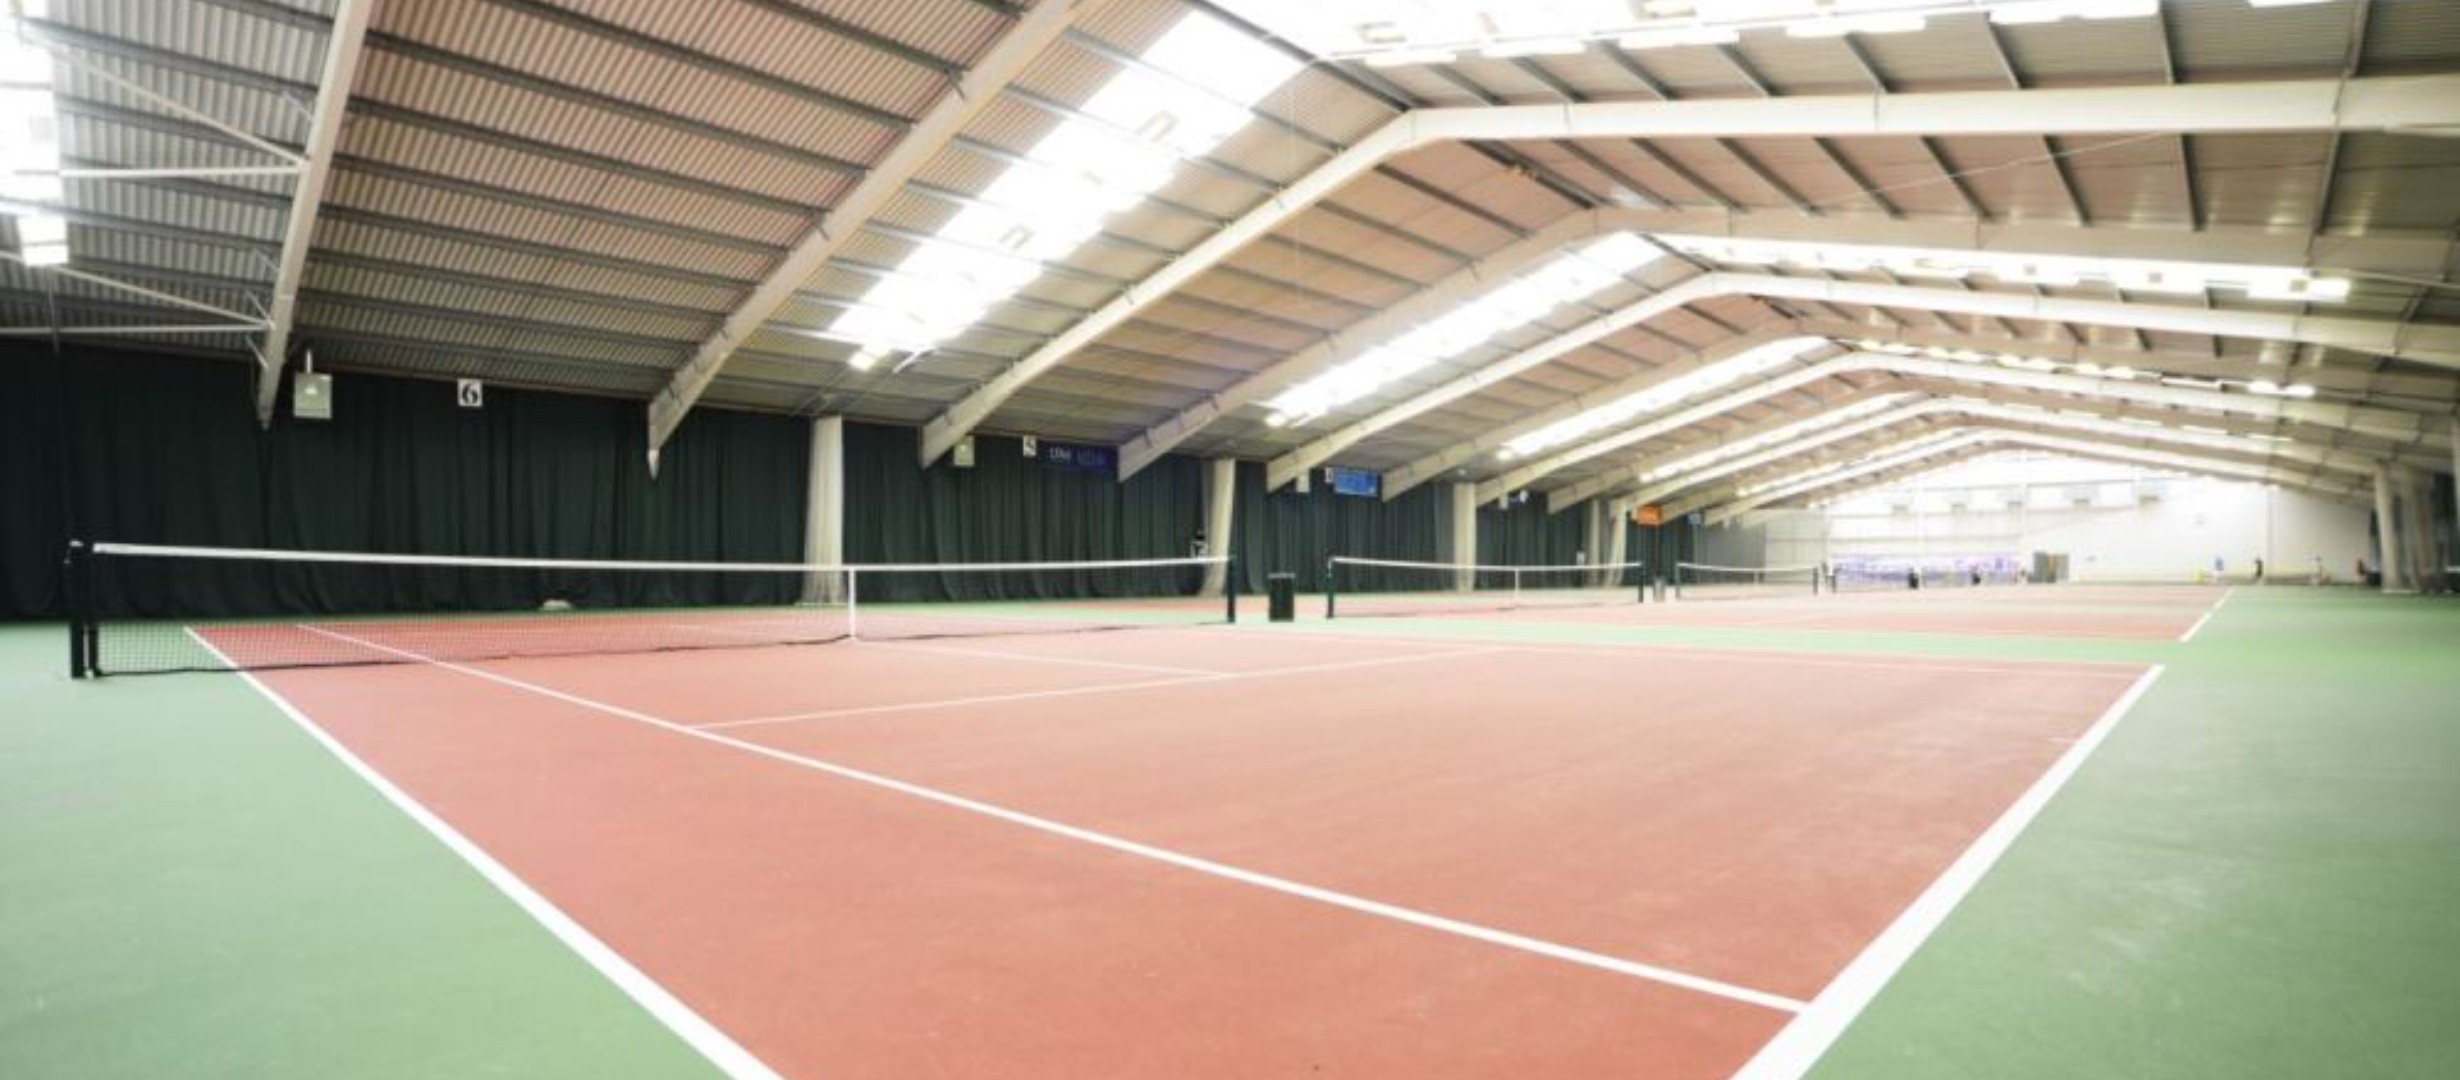 photo of indoor tennis courts